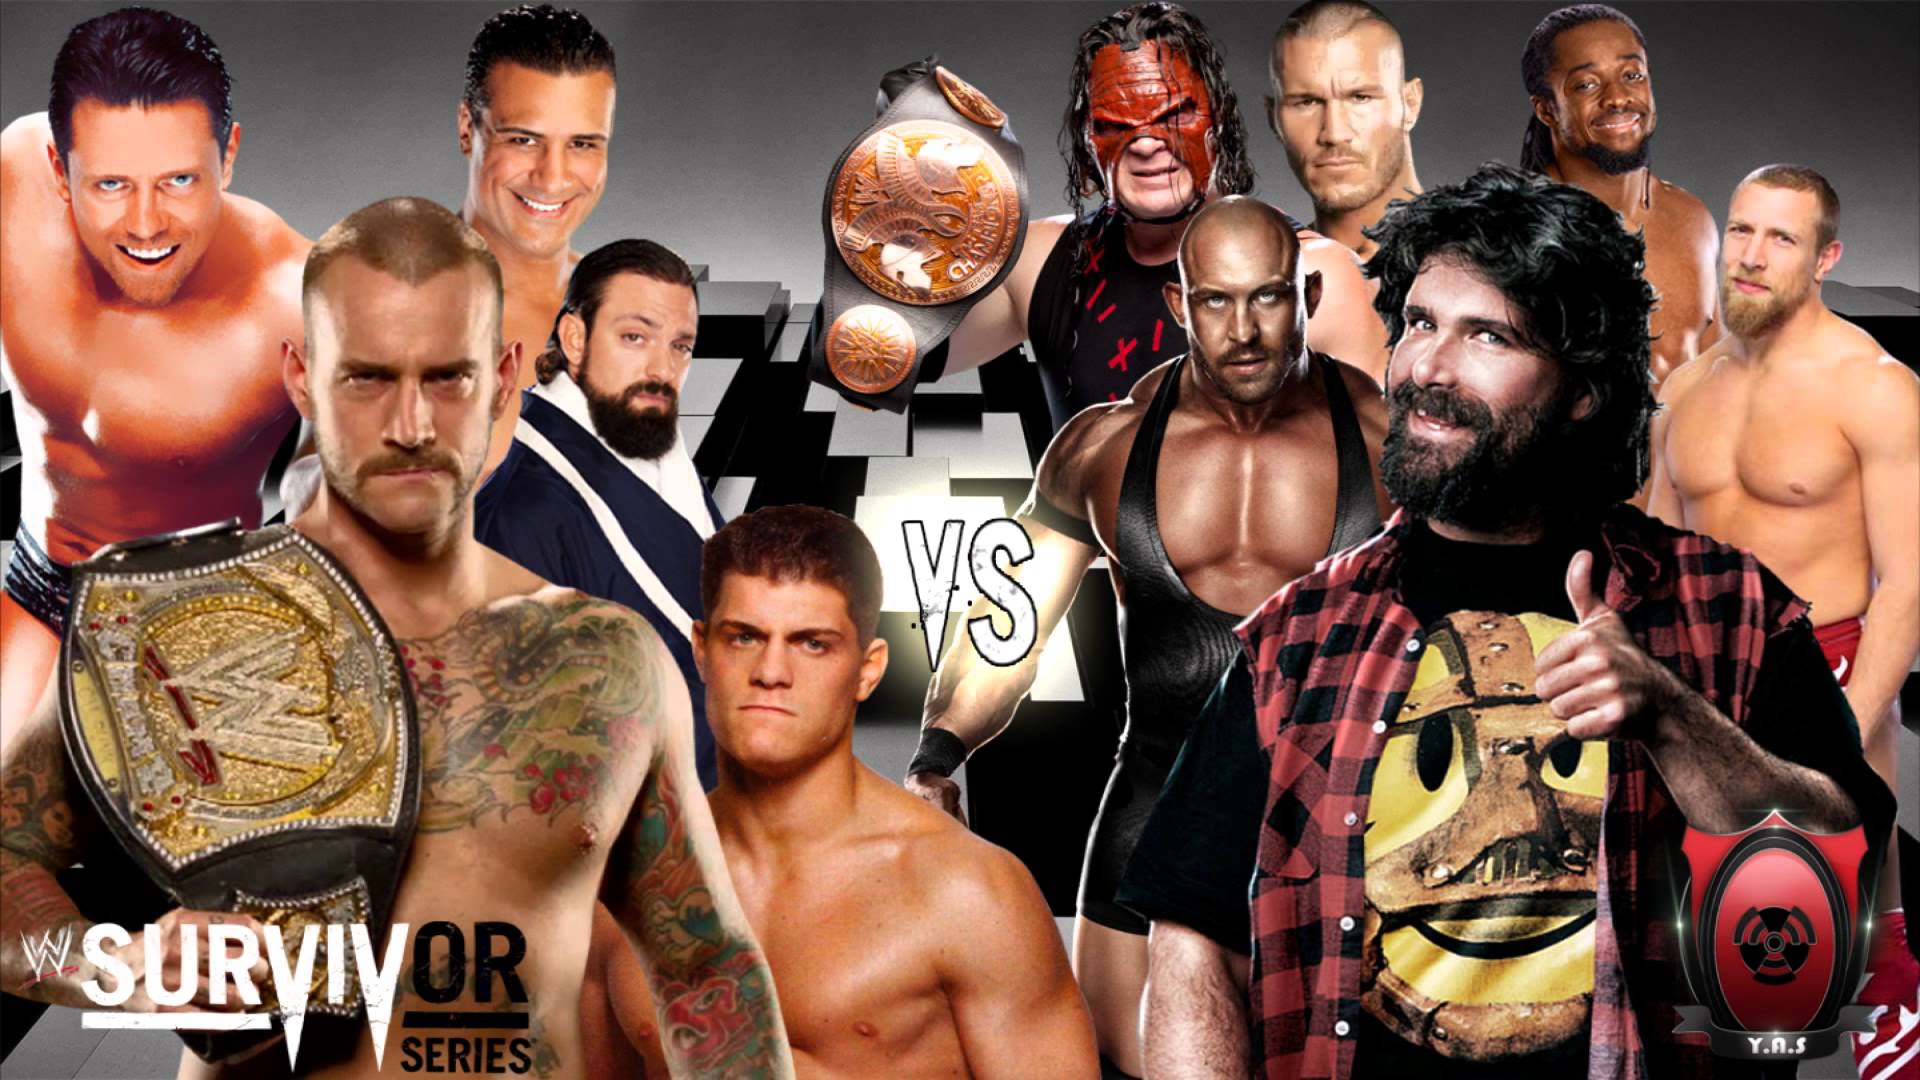 WWE Survivor Series 2012 song (DL) + 5 on 5 team